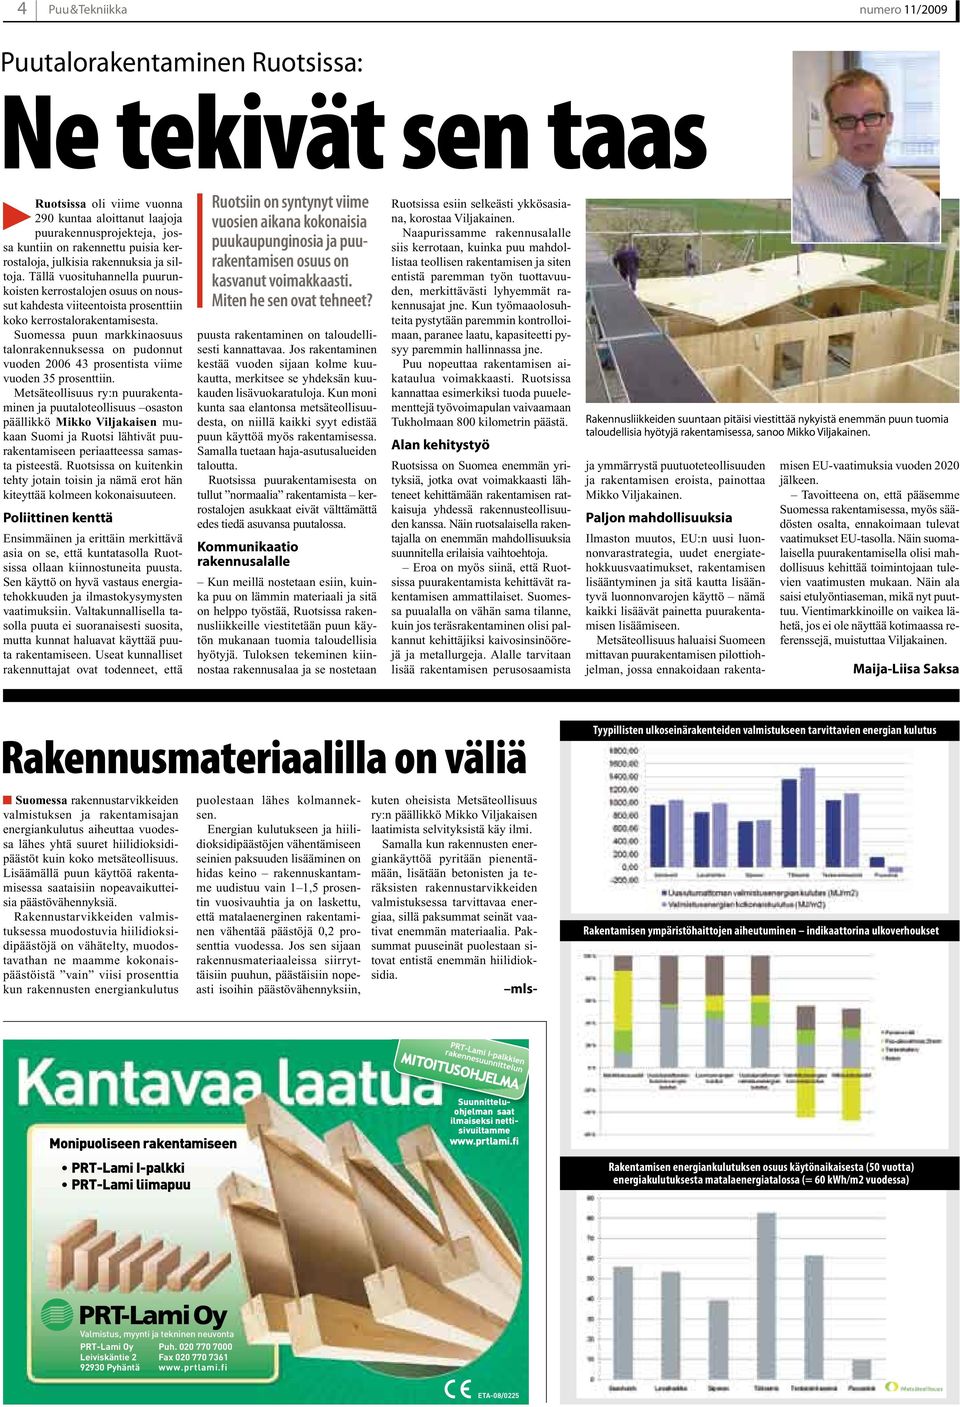 Suomessa puun markkinaosuus talonrakennuksessa on pudonnut vuoden 2006 43 prosentista viime vuoden 35 prosenttiin.